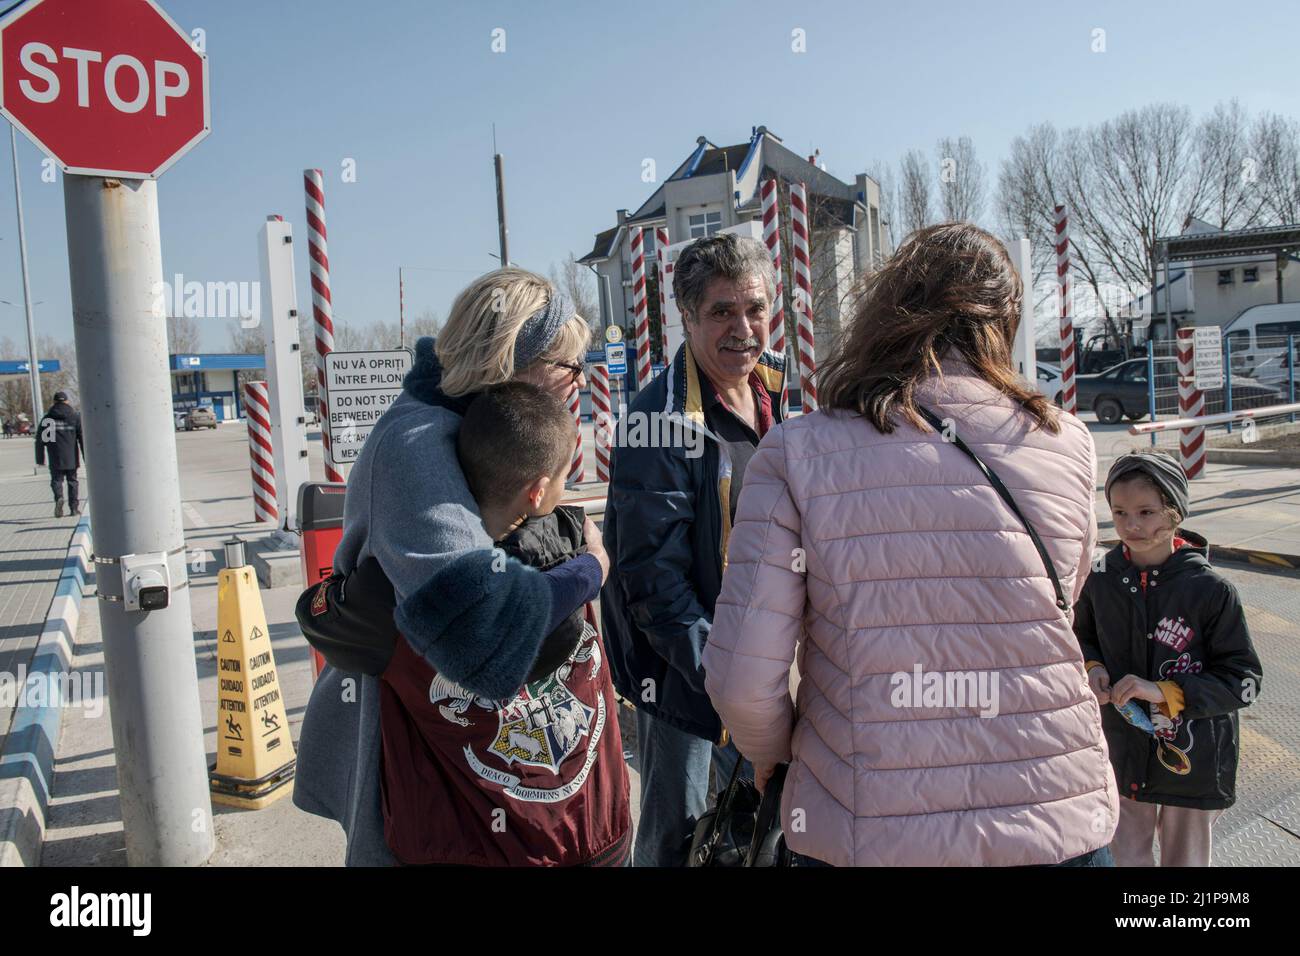 Le famiglie che ritornano in territorio ucraino si incontrano al confine. Dopo che il governo russo ha annunciato che in una nuova strategia concentrerà le sue truppe nella regione di Donbass, nella parte orientale dell'Ucraina, ucraini dal sud del paese, in particolare dalla regione di Odessa, ha iniziato a rientrare nel loro paese con la speranza che il conflitto non raggiungerà più le loro case, come alcuni cercano di fuggire e raggiungere luoghi più sicuri. Foto Stock